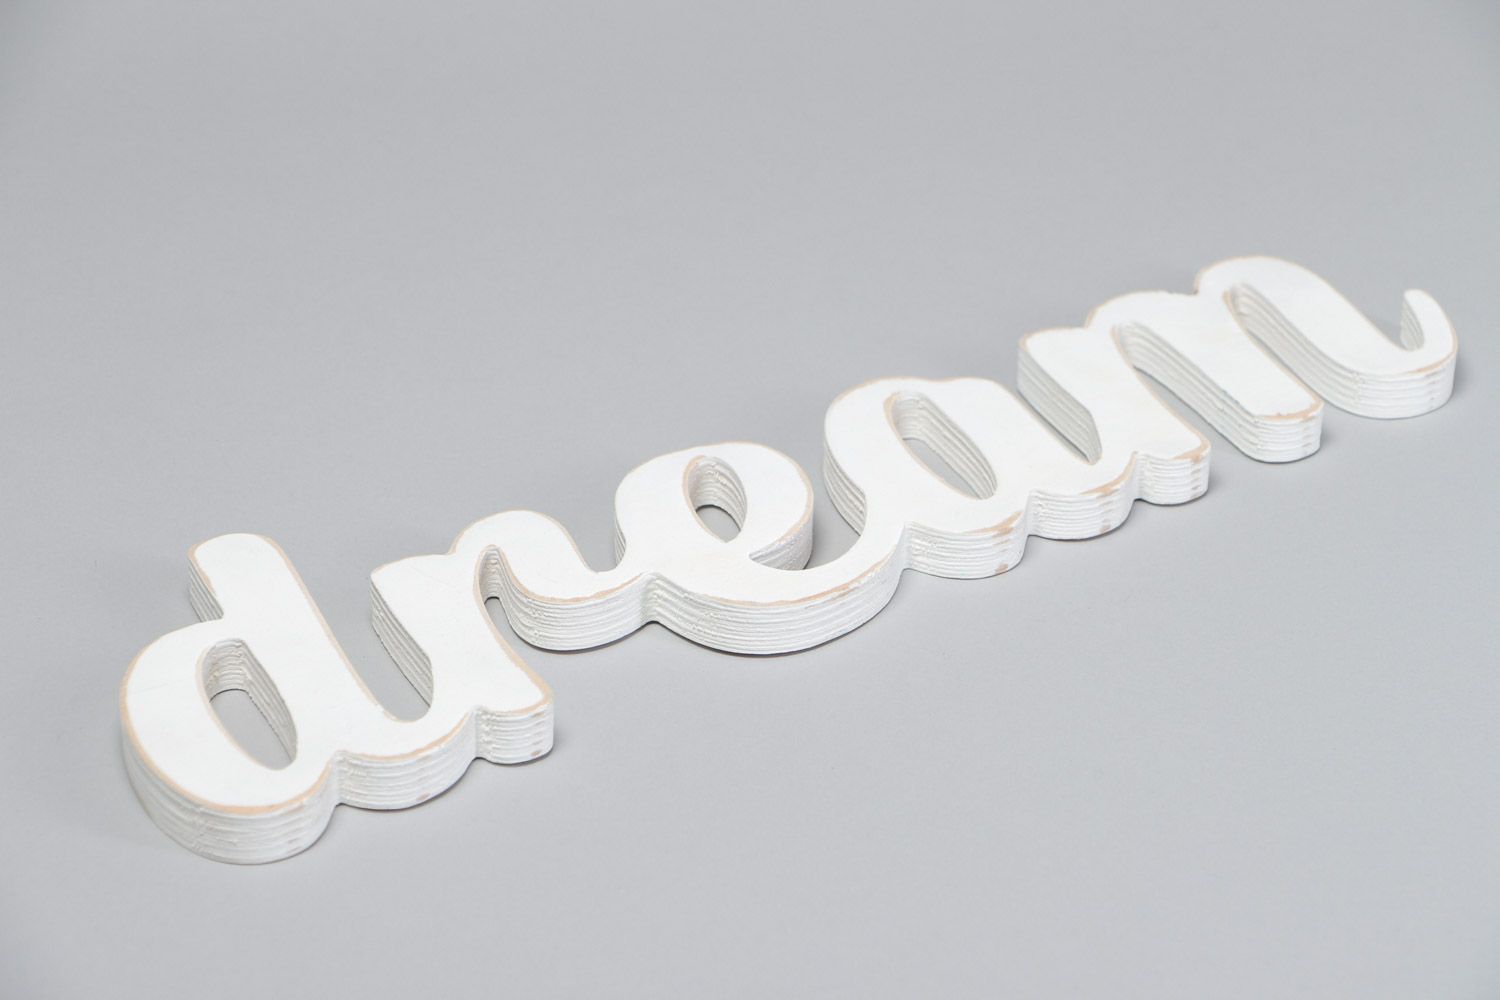 Декоративная надпись из фанеры Dream расписанная акриловыми красками хэнд мэйд фото 3